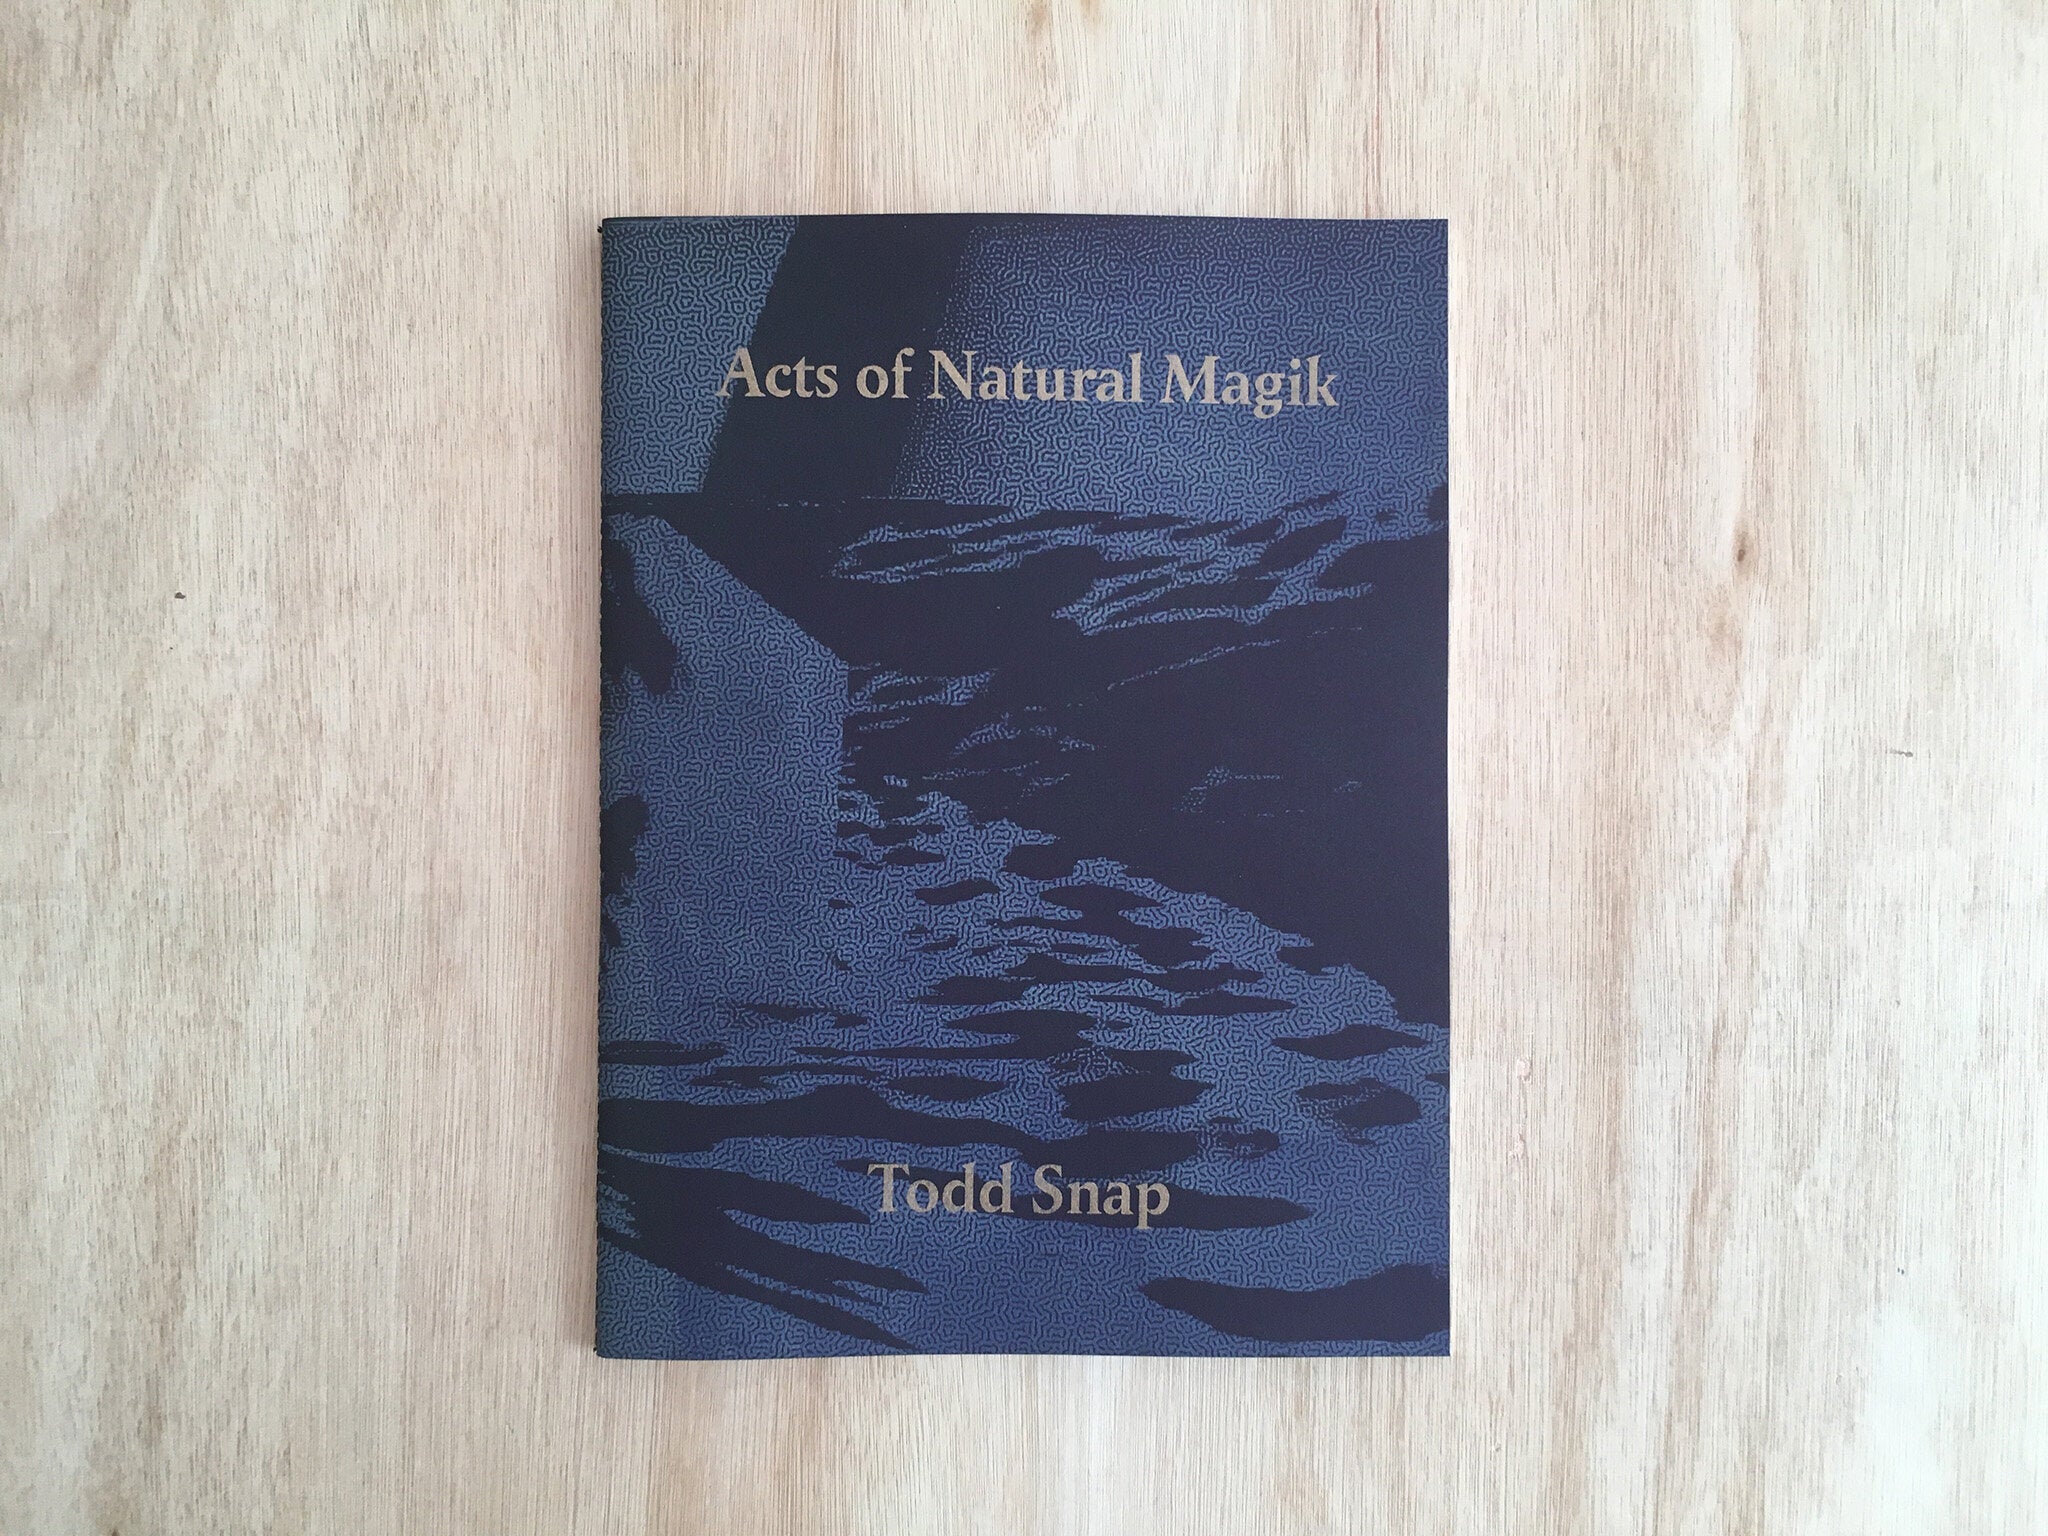 ACTS OF NATURAL MAGIK by Todd Snap